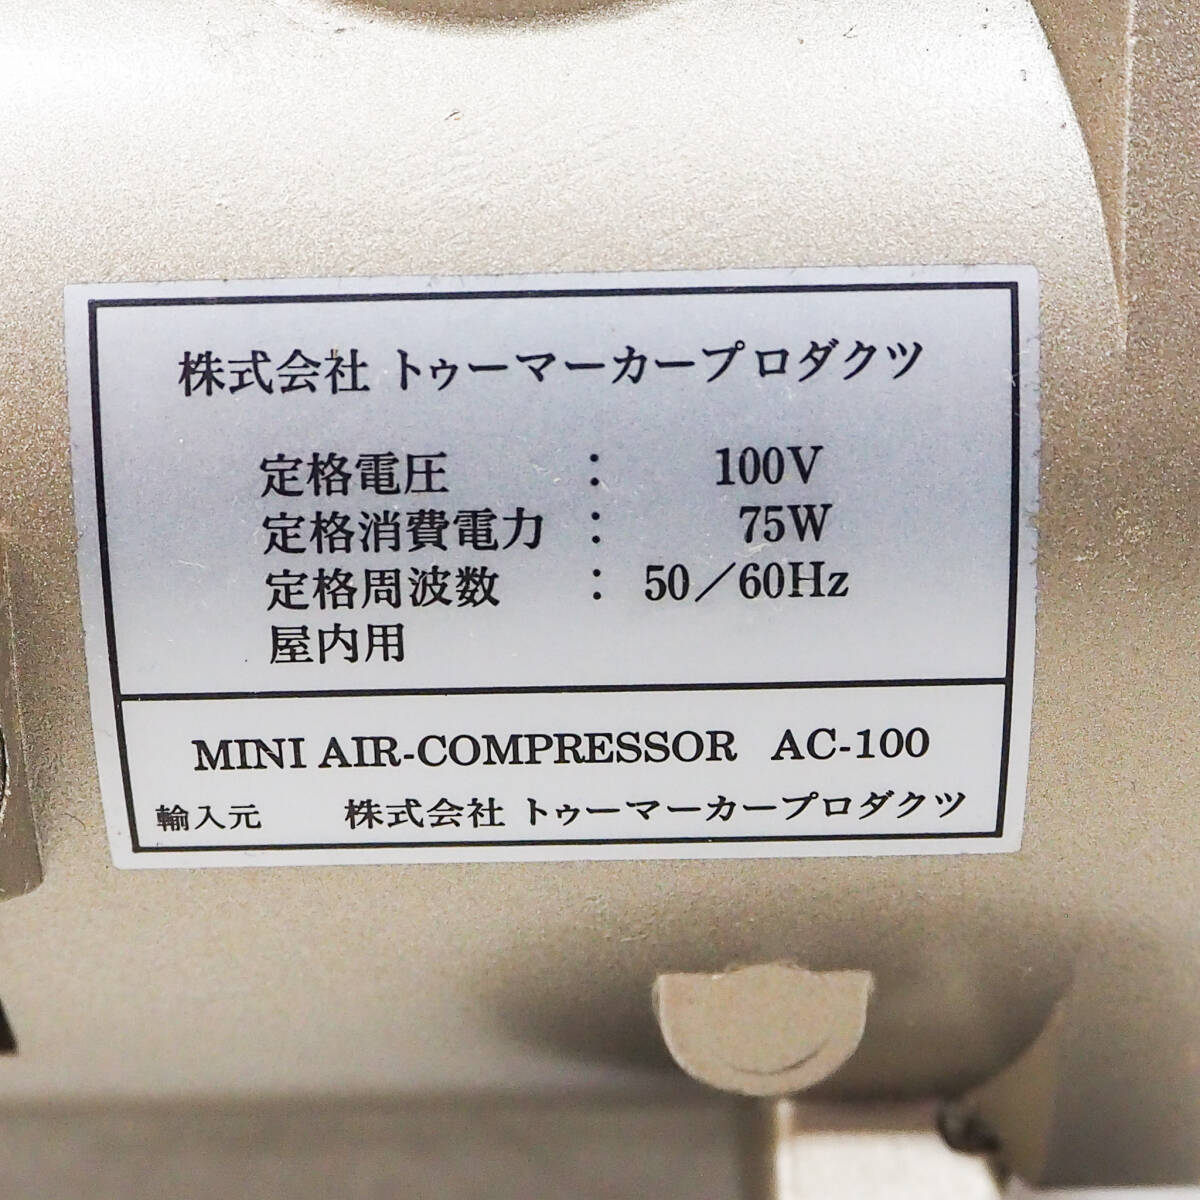  палец на ноге маркер (габарит) Pro dak погружен в машину ni воздушный компрессор AC-100.... kun пластиковая модель модель покраска краска K5173